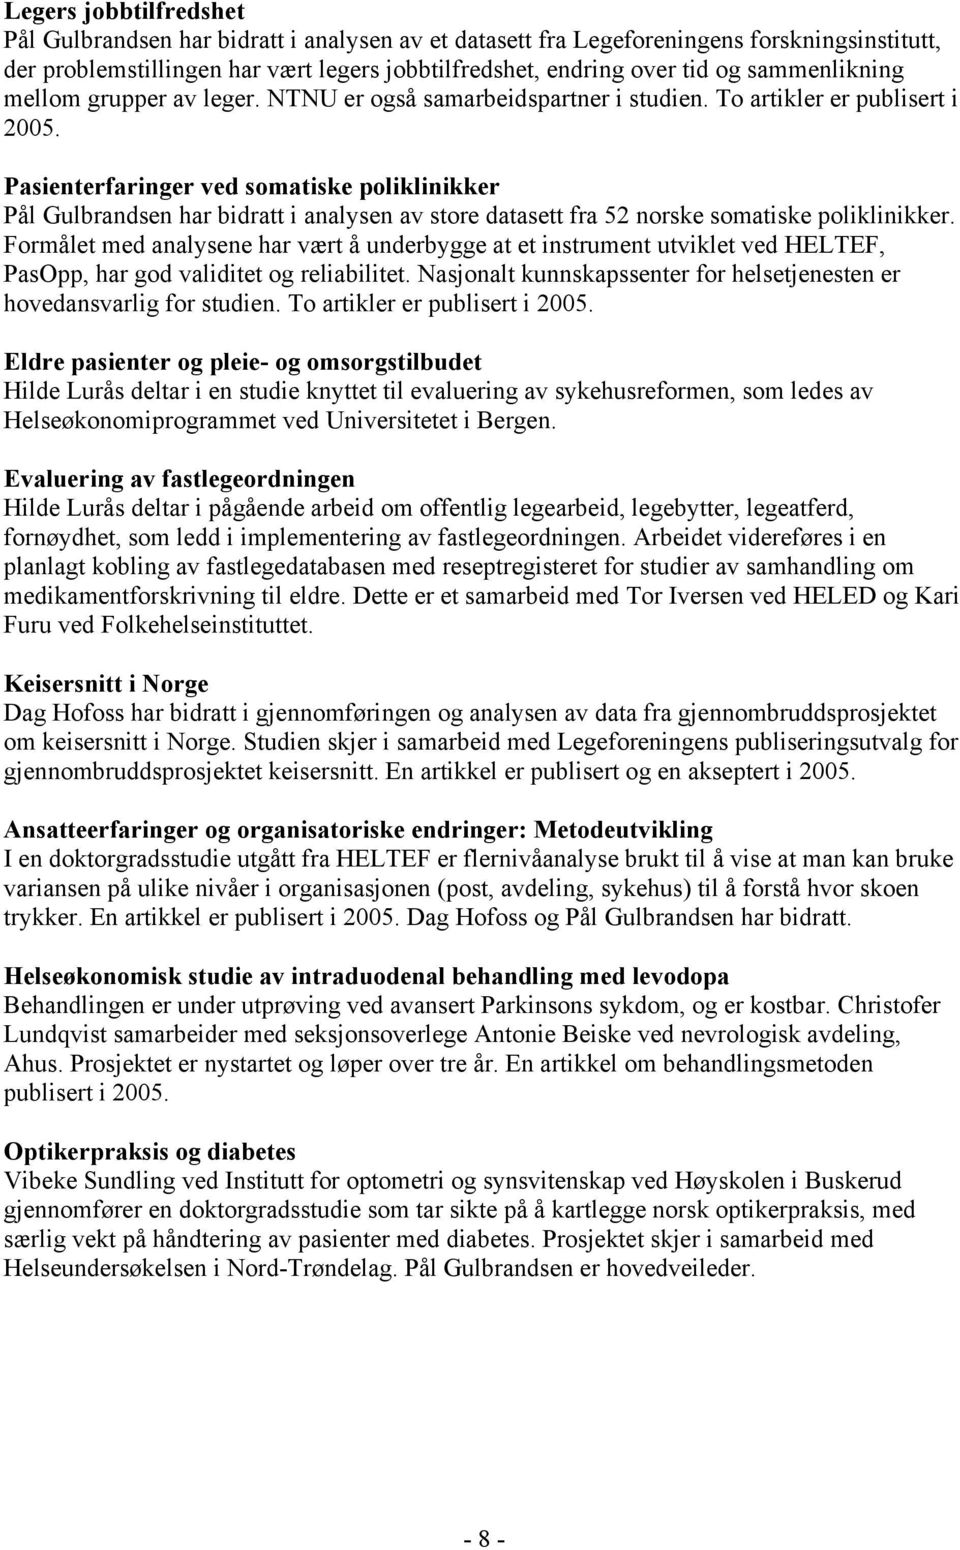 Pasienterfaringer ved somatiske poliklinikker Pål Gulbrandsen har bidratt i analysen av store datasett fra 52 norske somatiske poliklinikker.